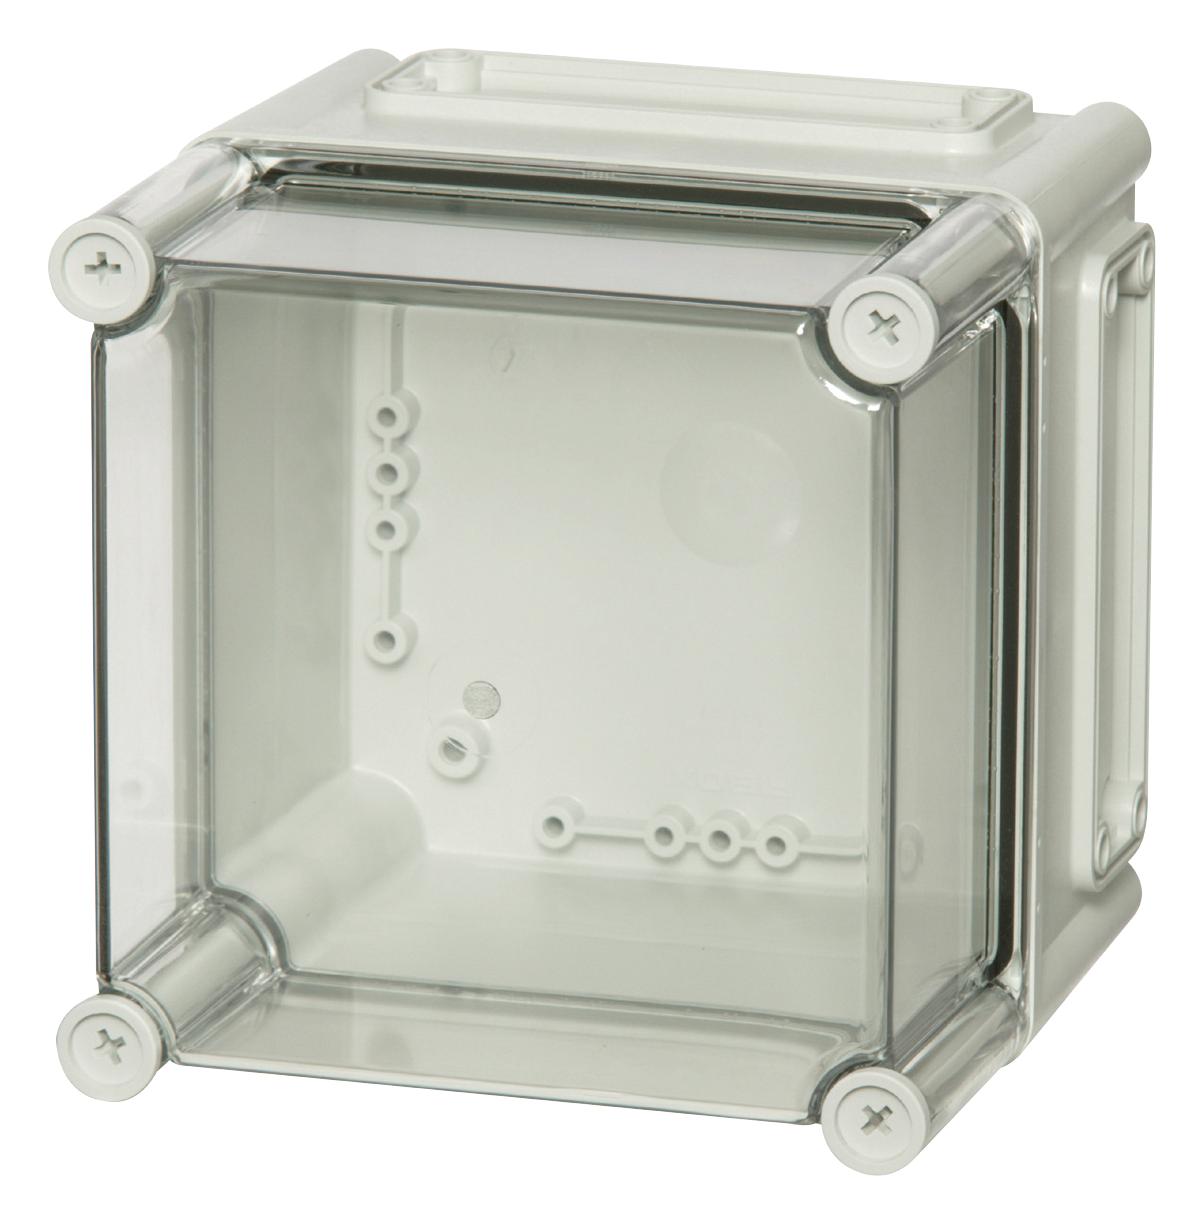 Fibox Ekha 180 T Enclosure Enclosure, Multipurpose, Transparent, Pc